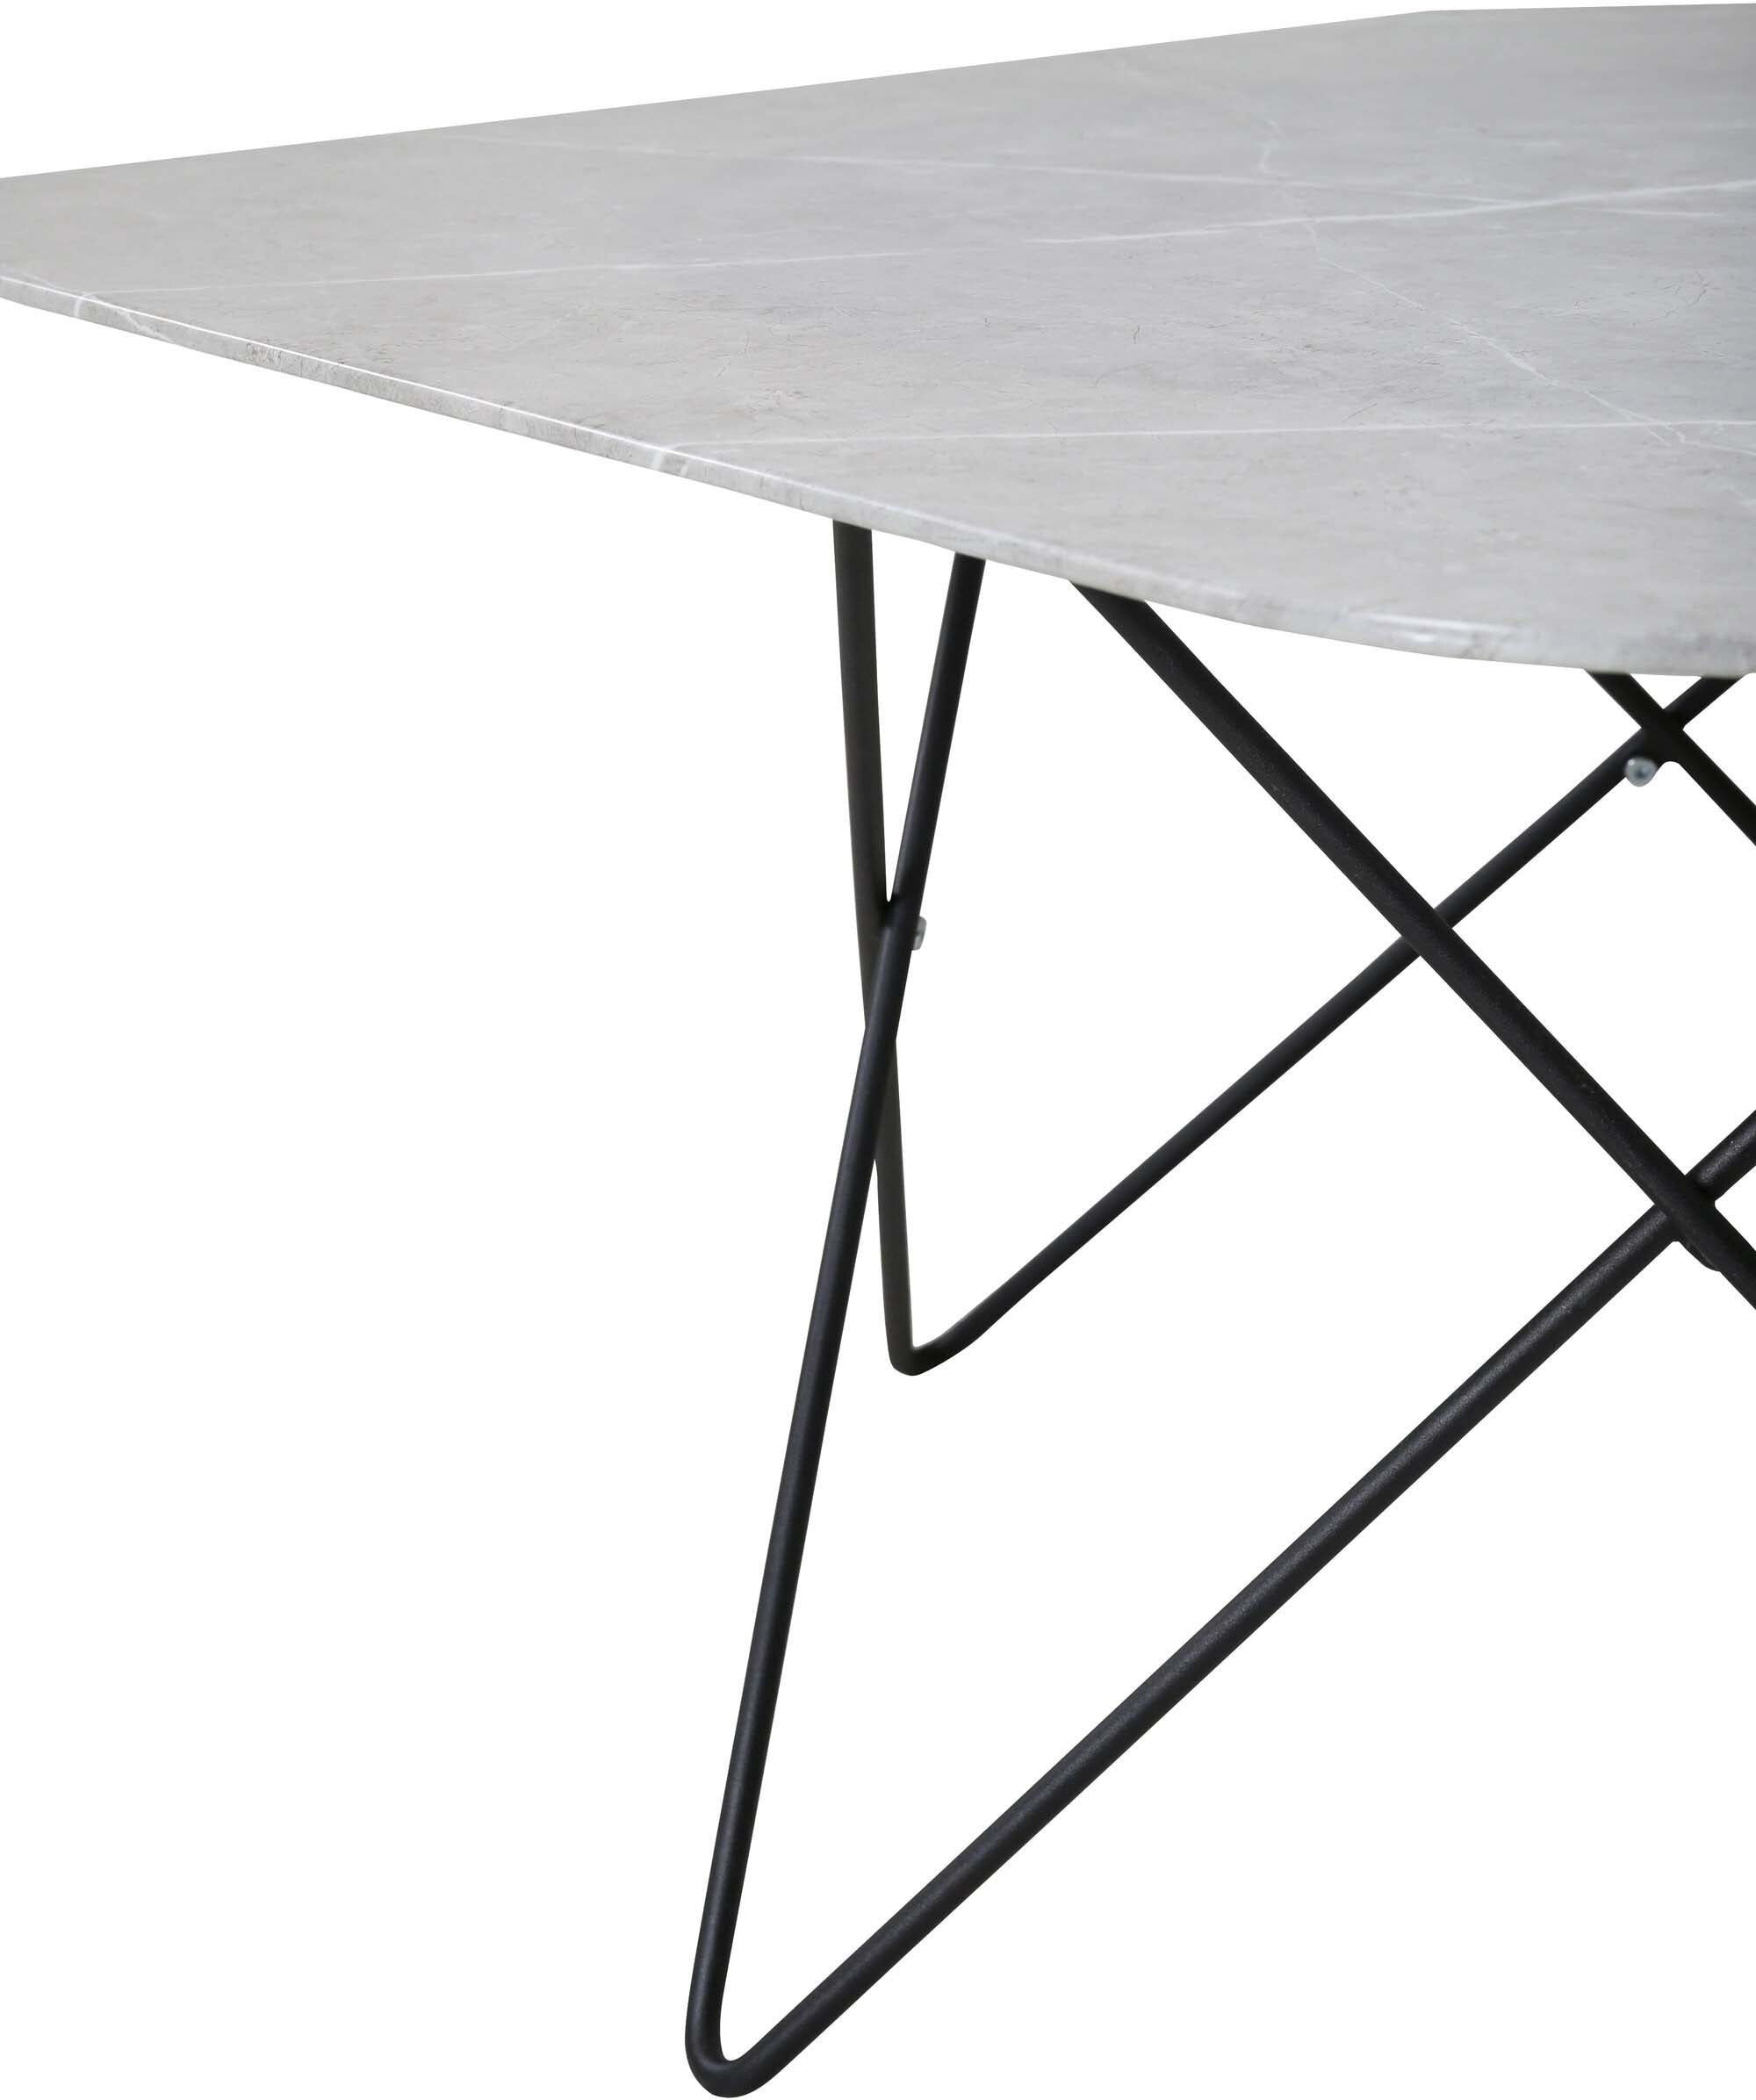 Tristar Beistelltisch in Grau / Schwarz präsentiert im Onlineshop von KAQTU Design AG. Beistelltisch ist von Venture Home